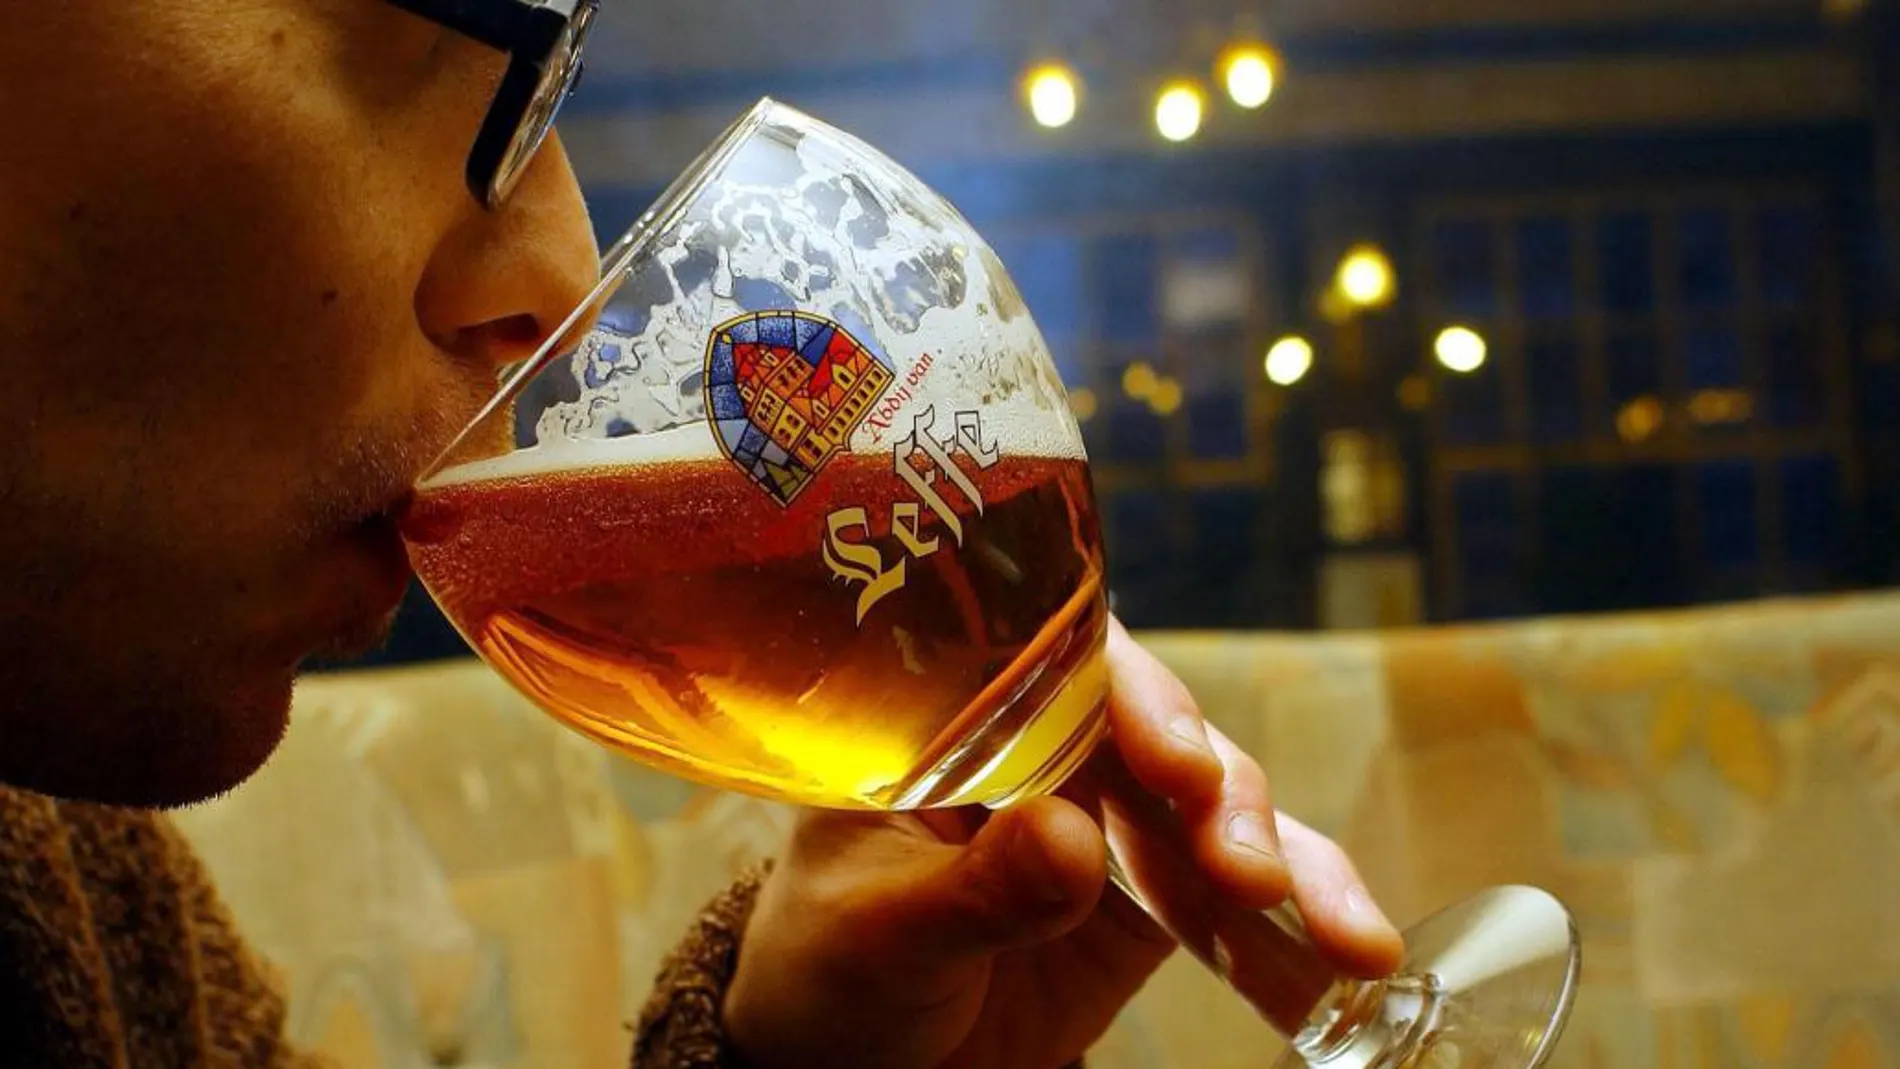 En Bélgica se producen unos 1.500 tipos distintos de cerveza